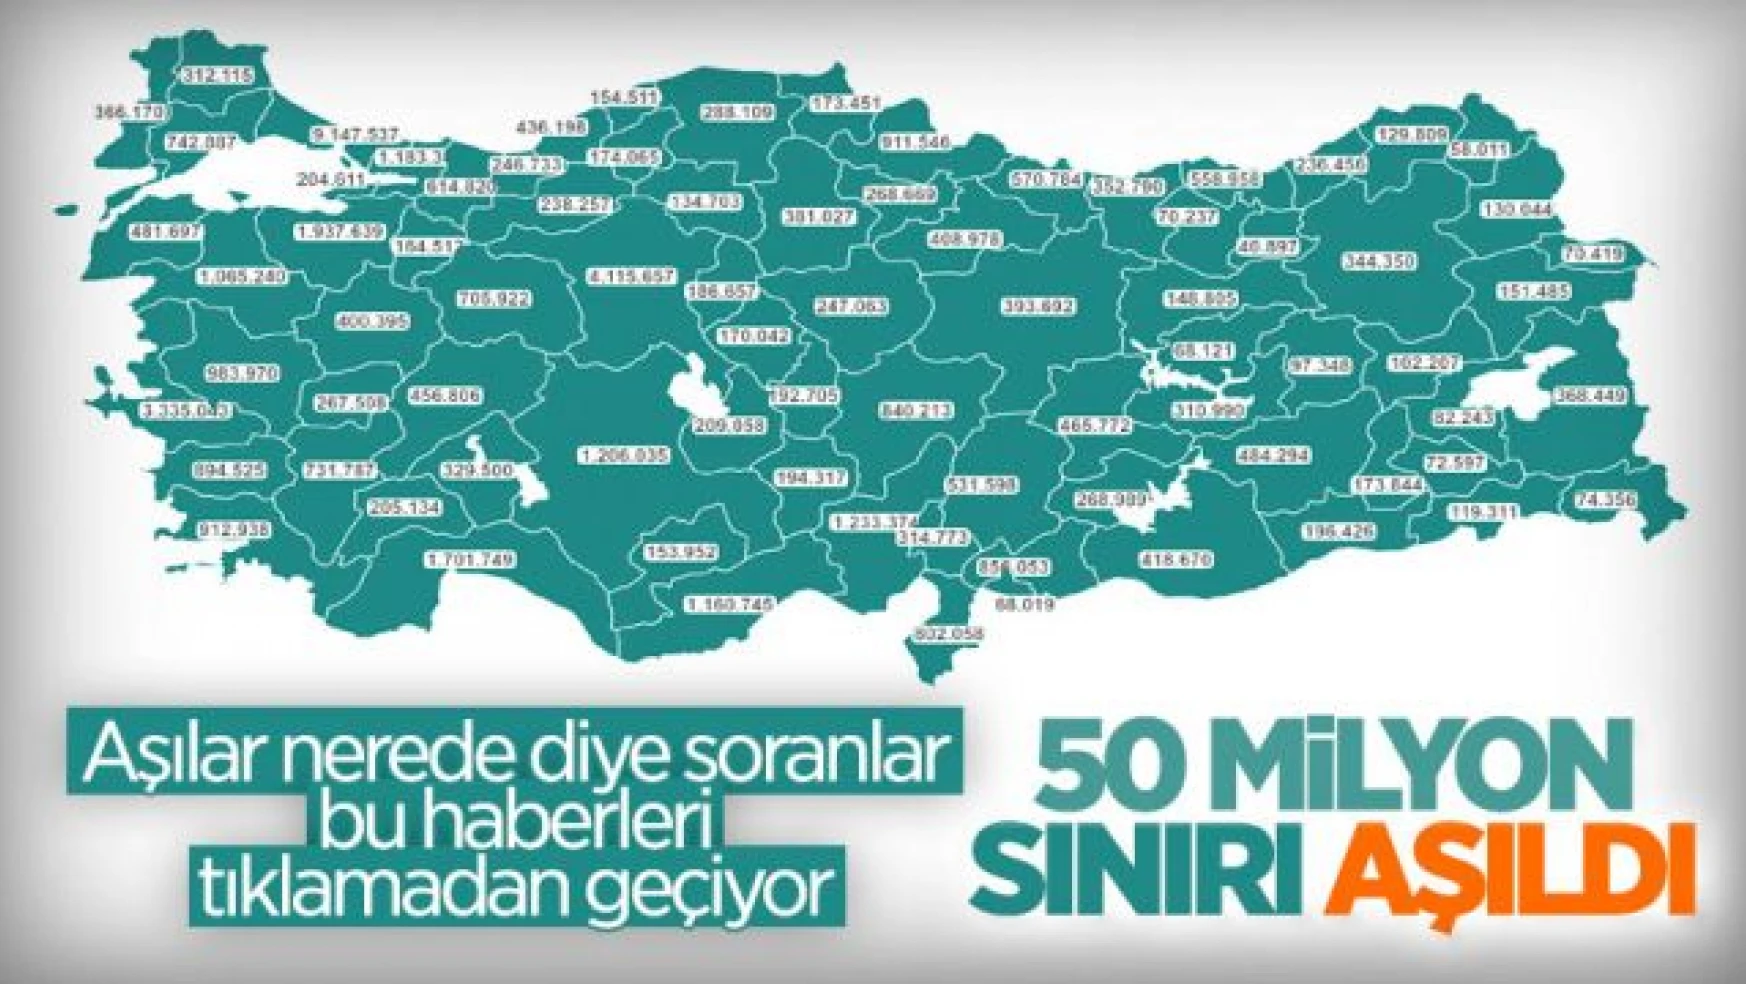 Cumhurbaşkanı Erdoğan: Aşıda 50 milyon dozu aştık